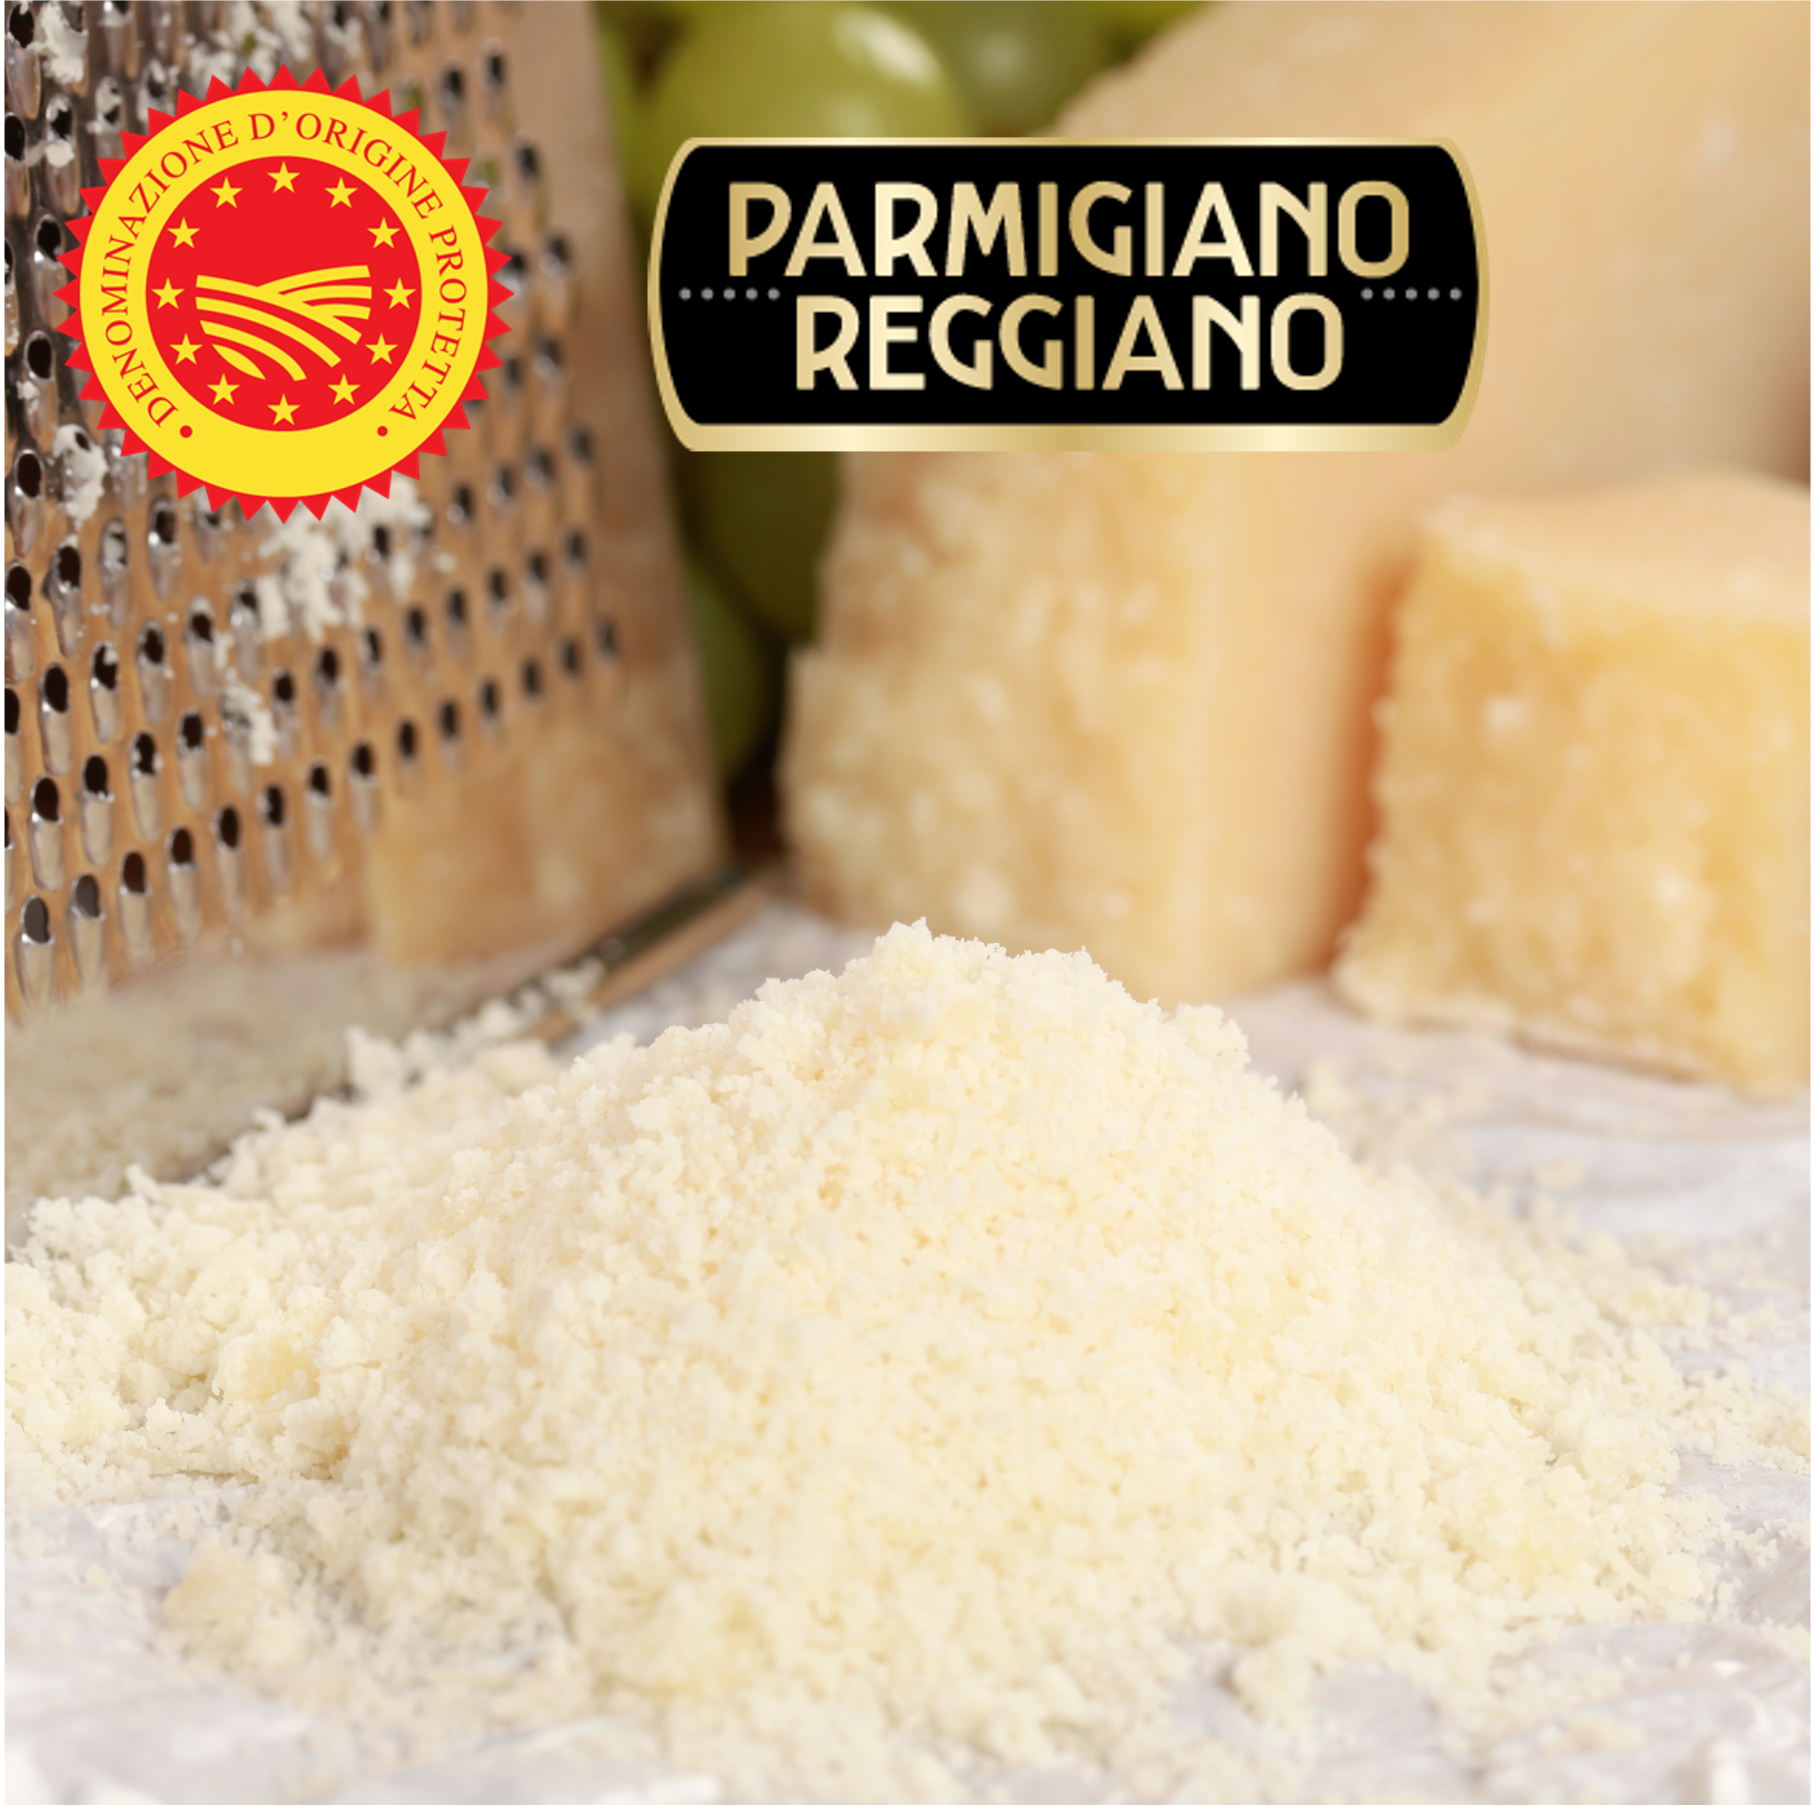 Le Parmigiano reggiano DOP râpé 24 mois / parmesan